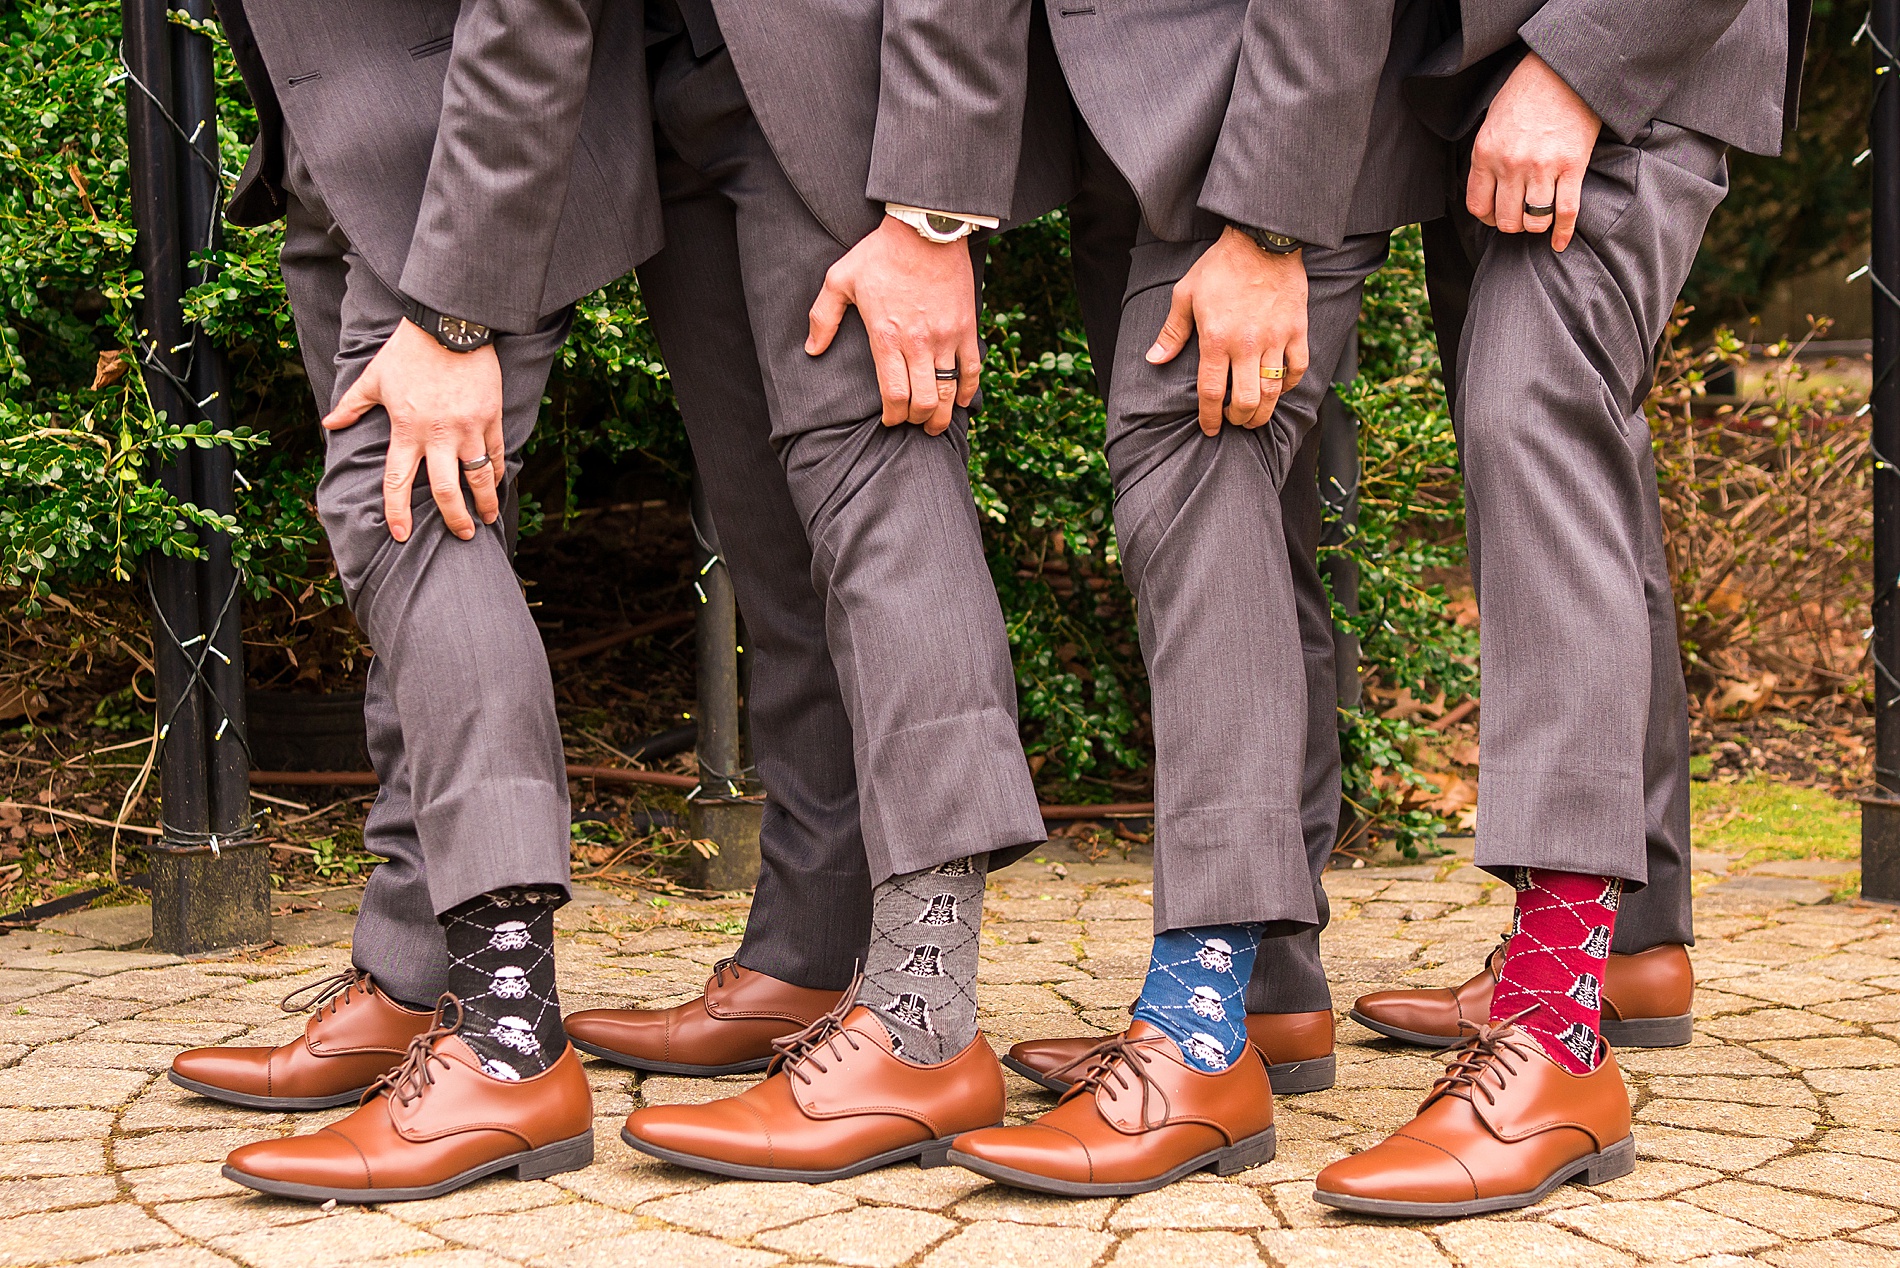 groom and groomsmen fun socks